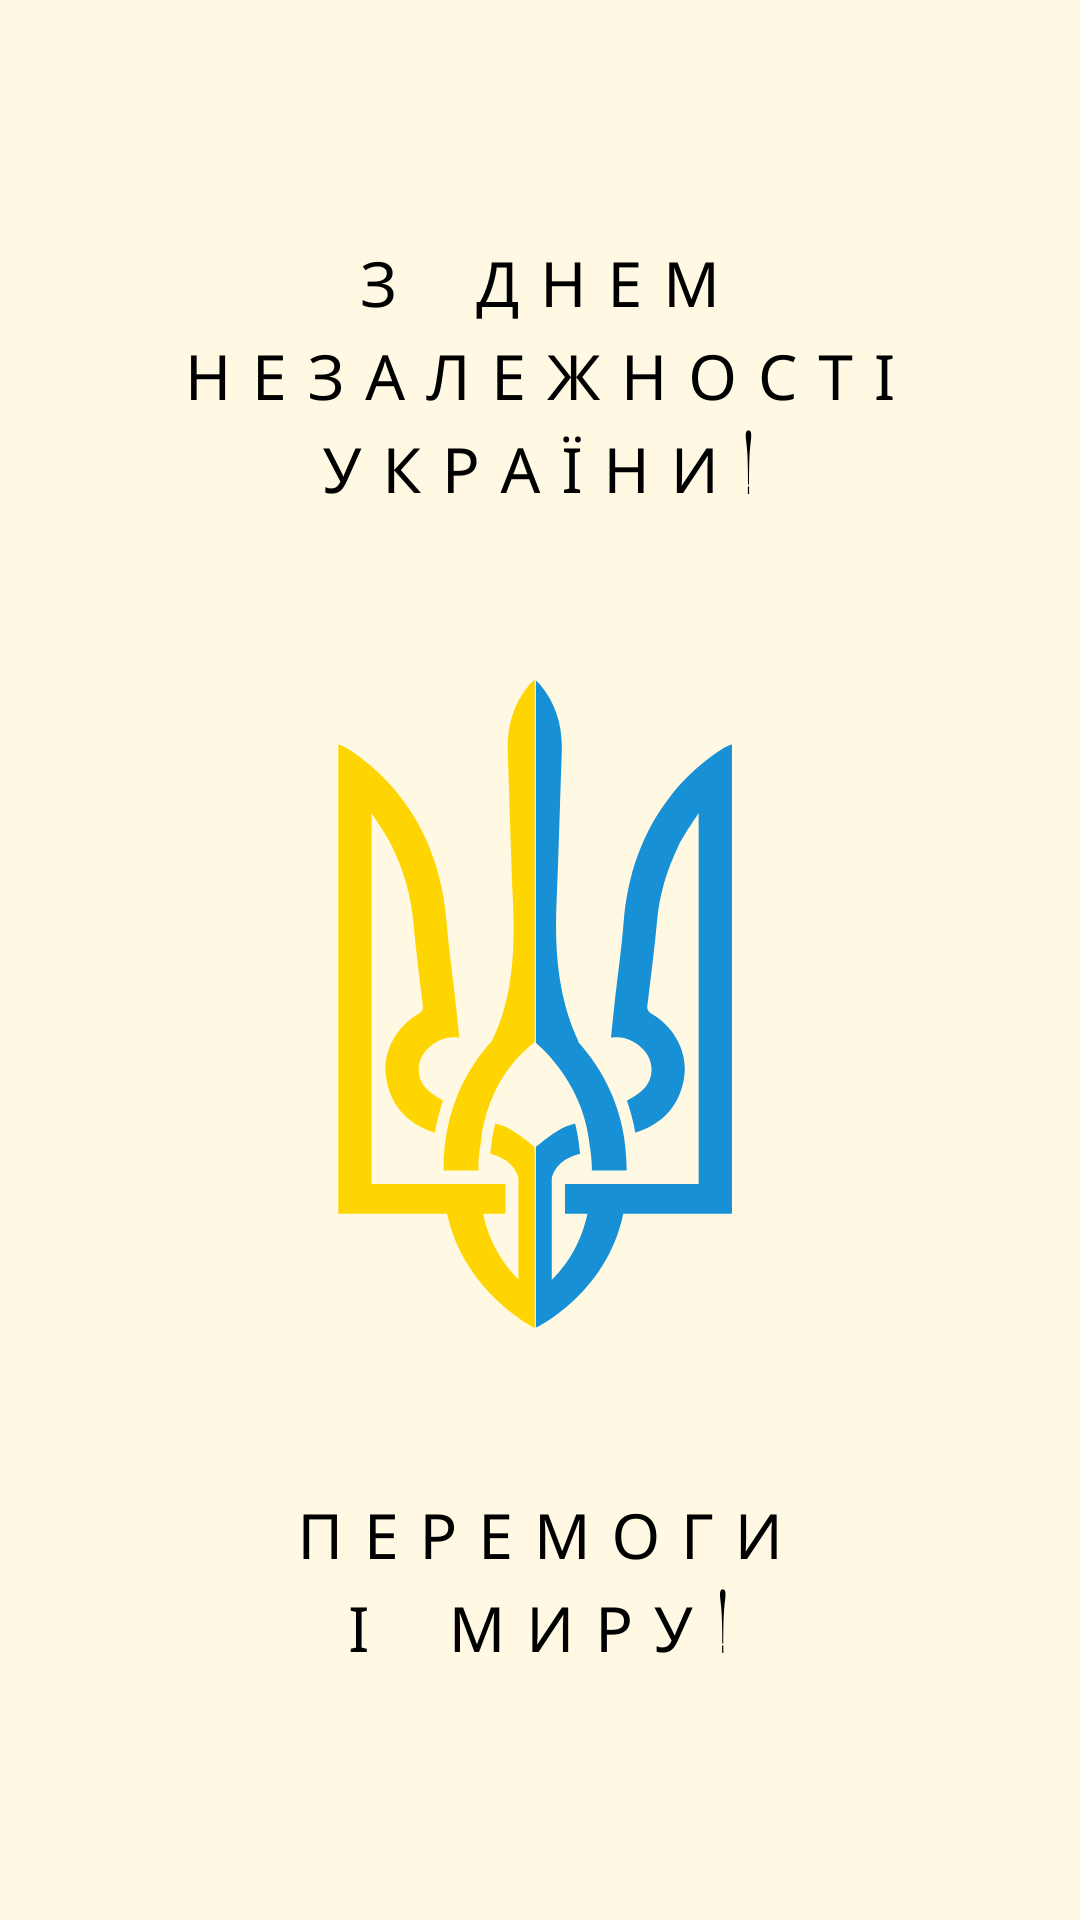 З Днем Незалежності України - Moonzori - 015